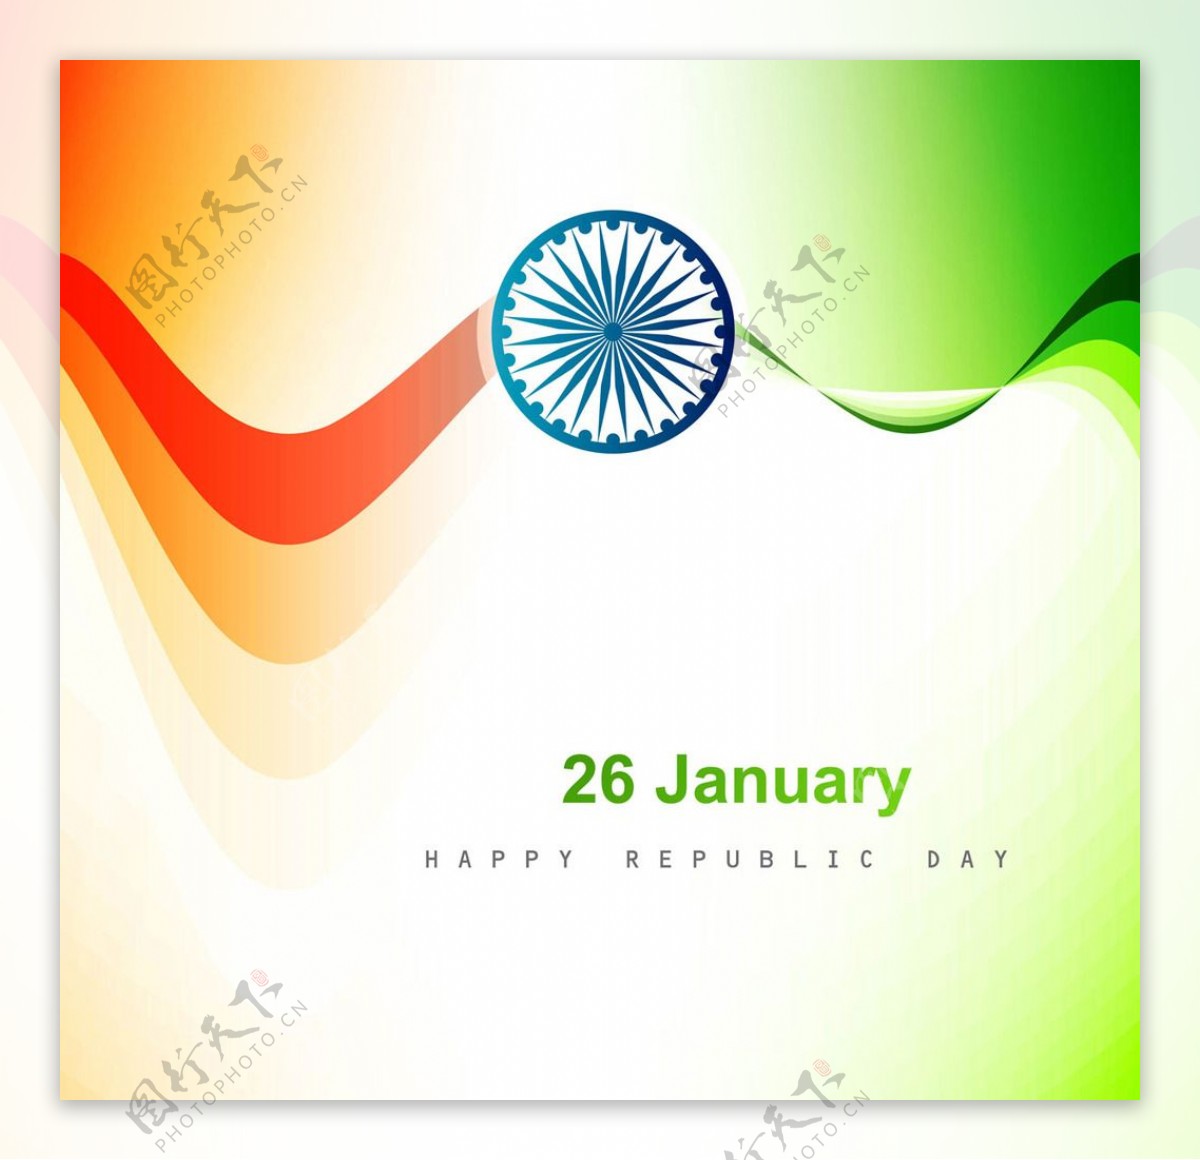 印度共和国日背景